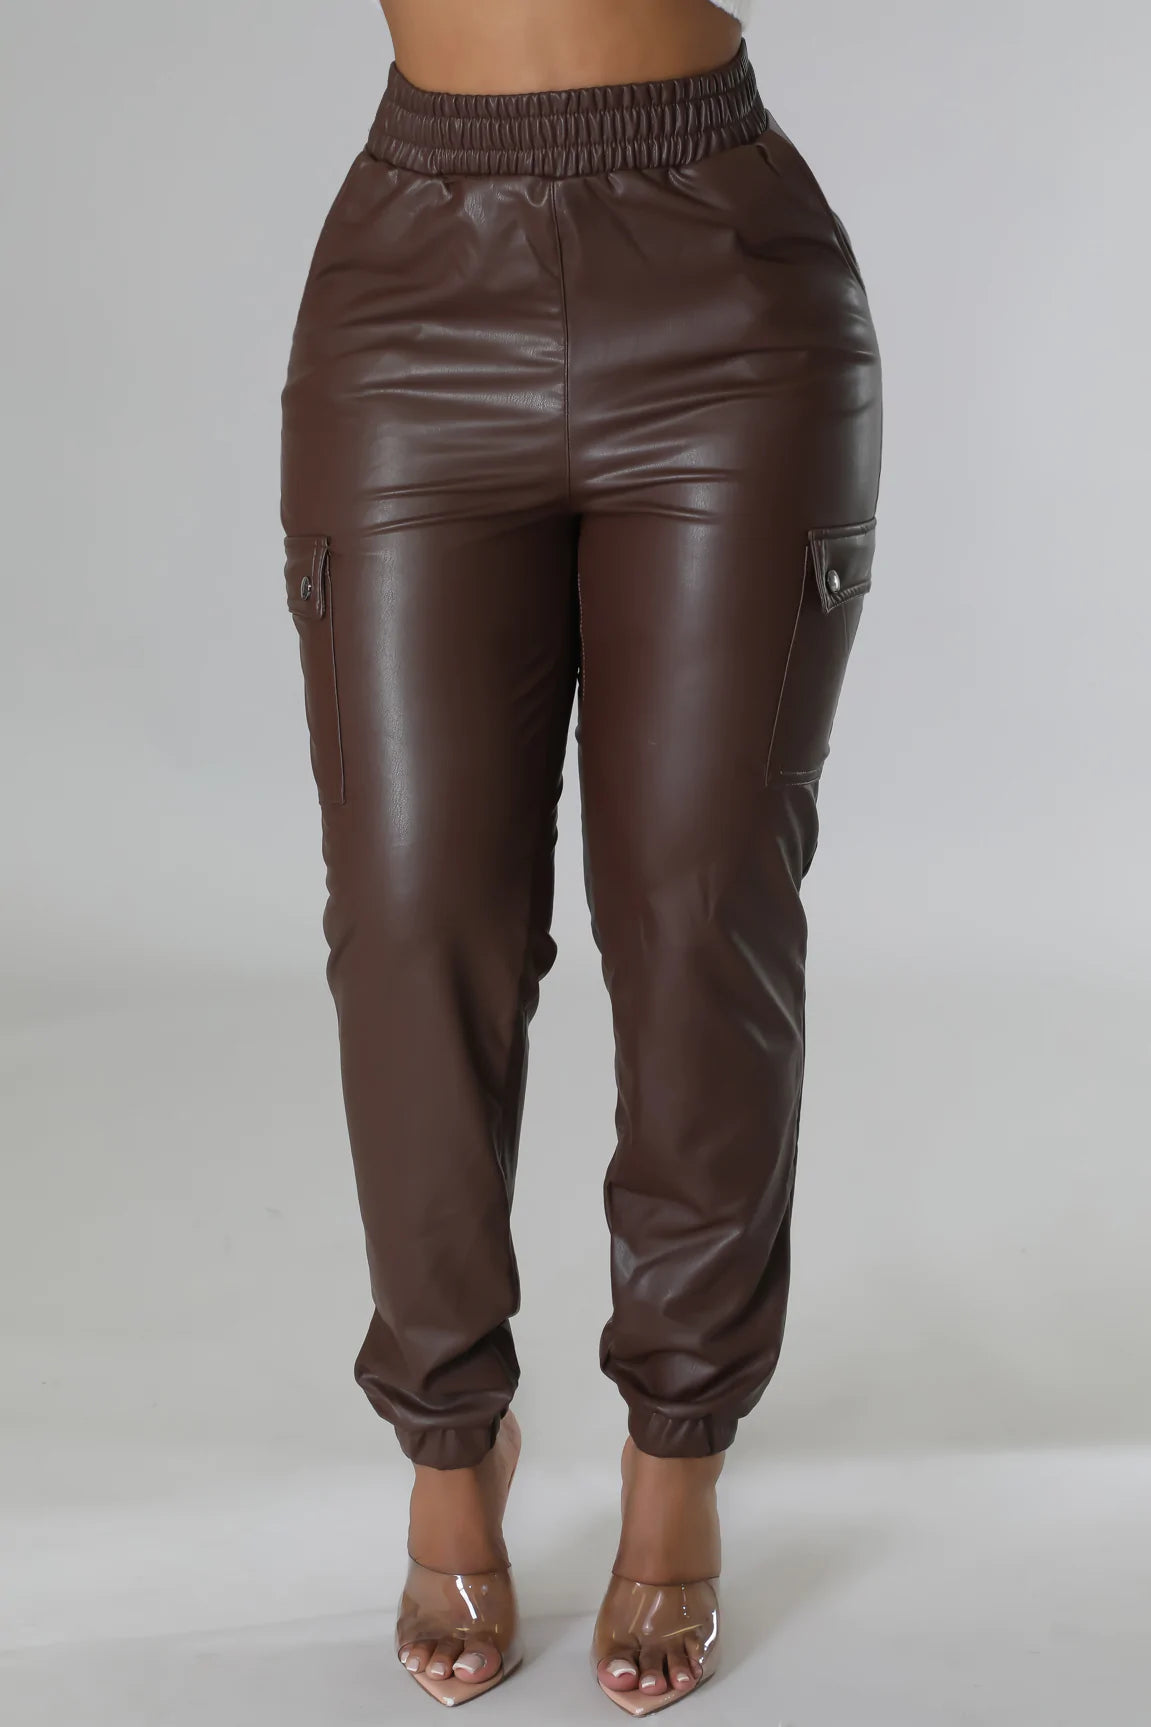 Queen leatherette pants